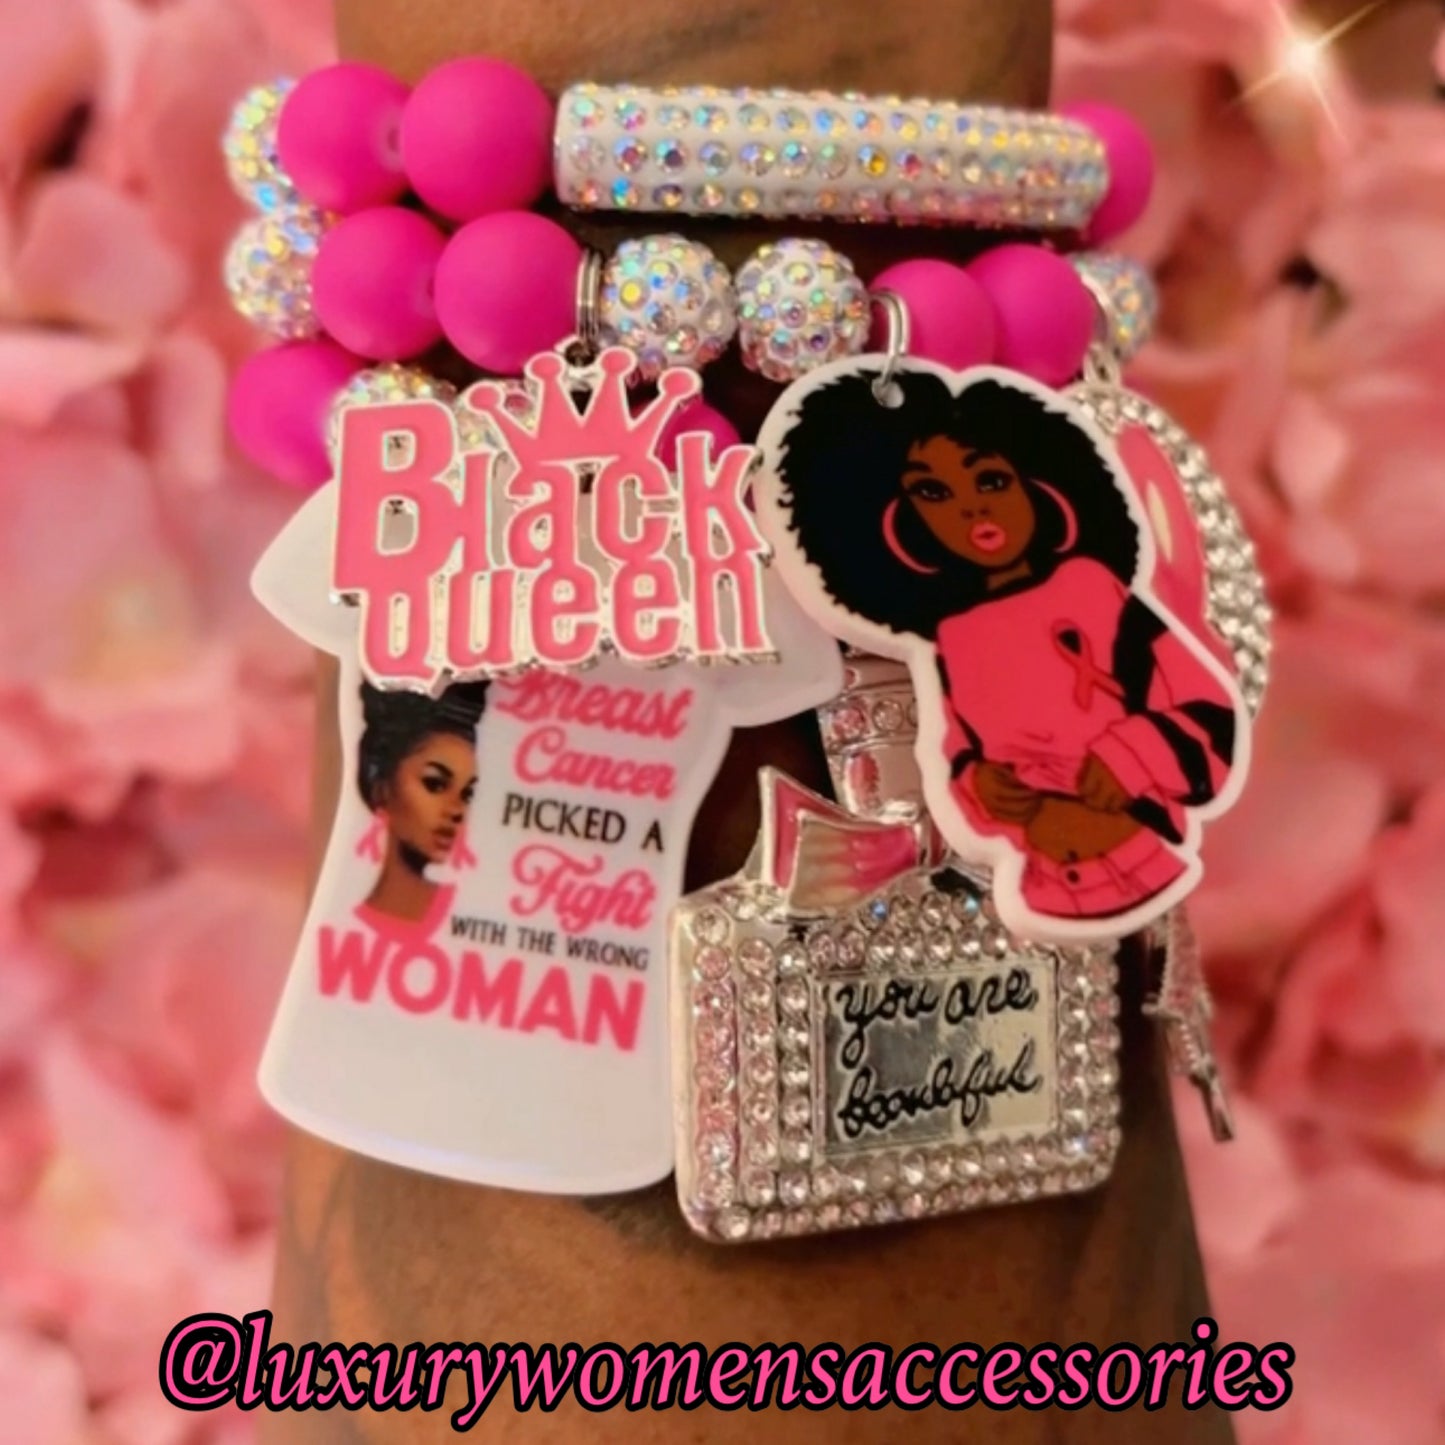 “Glam” Breast Cancer Awareness Bracelet(set of 3)